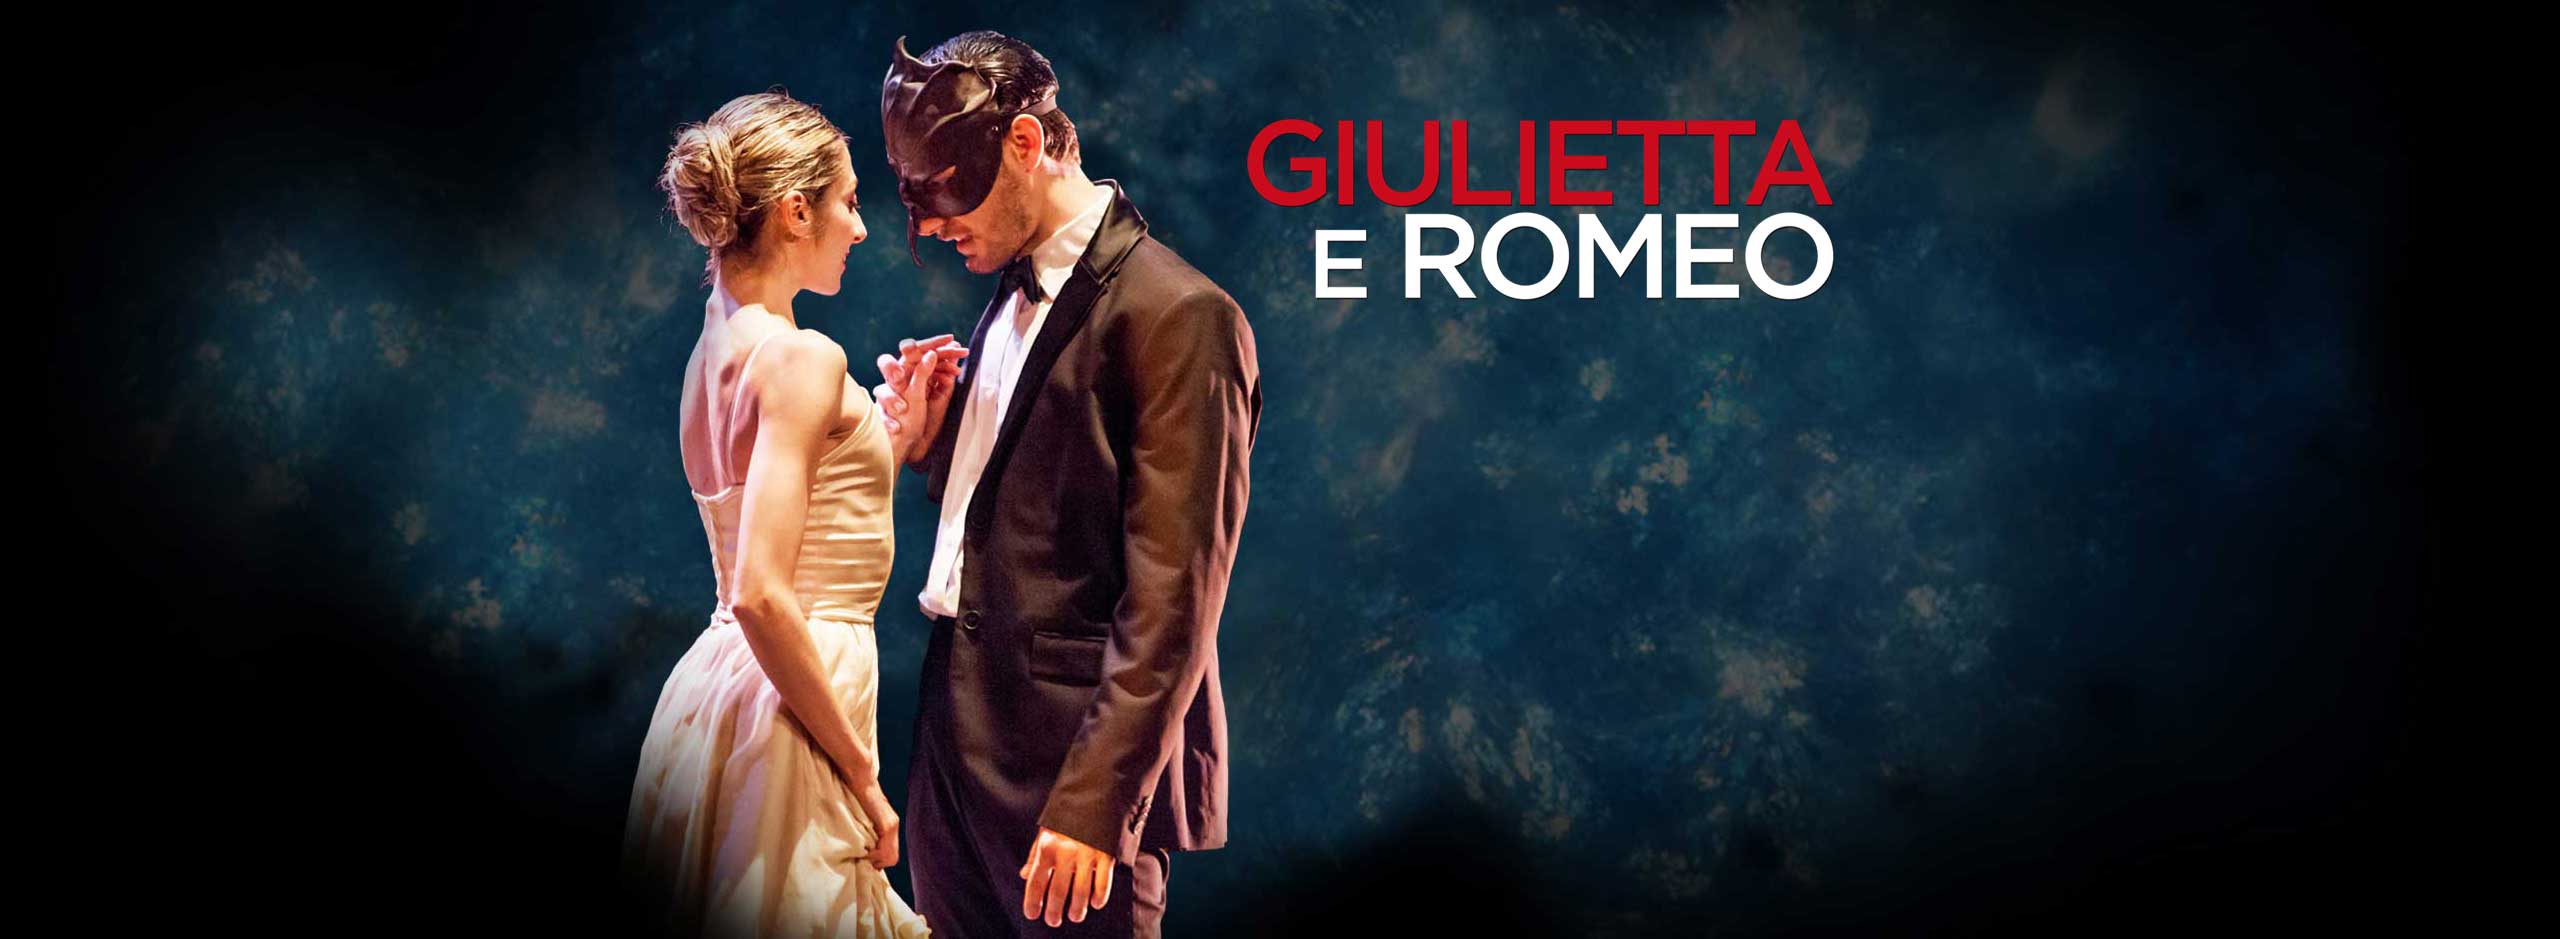 Balletto di Roma | Giulietta e Romeo al Teatro Vittoria | Nei Teatri di Roma 2018-19